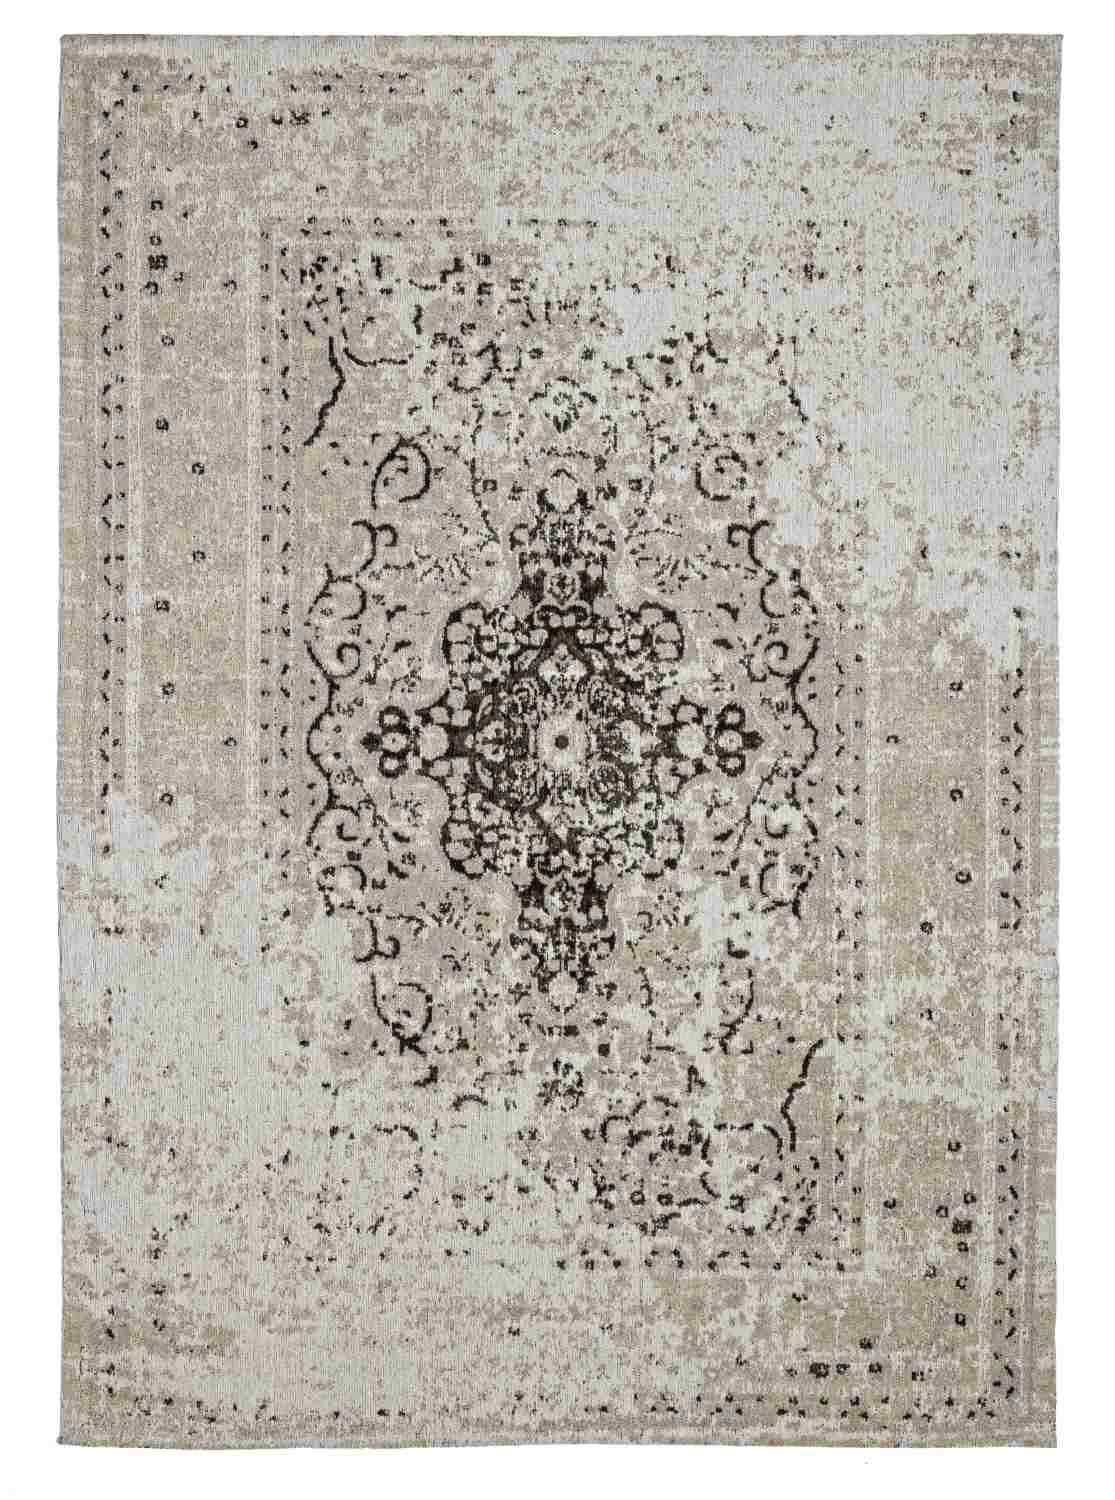 Der Teppich Jaipur überzeugt mit seinem klassischen Design. Gefertigt wurde die Vorderseite aus 95% Baumwolle und 5% Polyester, die Rückseite aus 100% Baumwolle. Der Teppich besitzt einen grauen Farbton und die Maße von 140x200 cm.